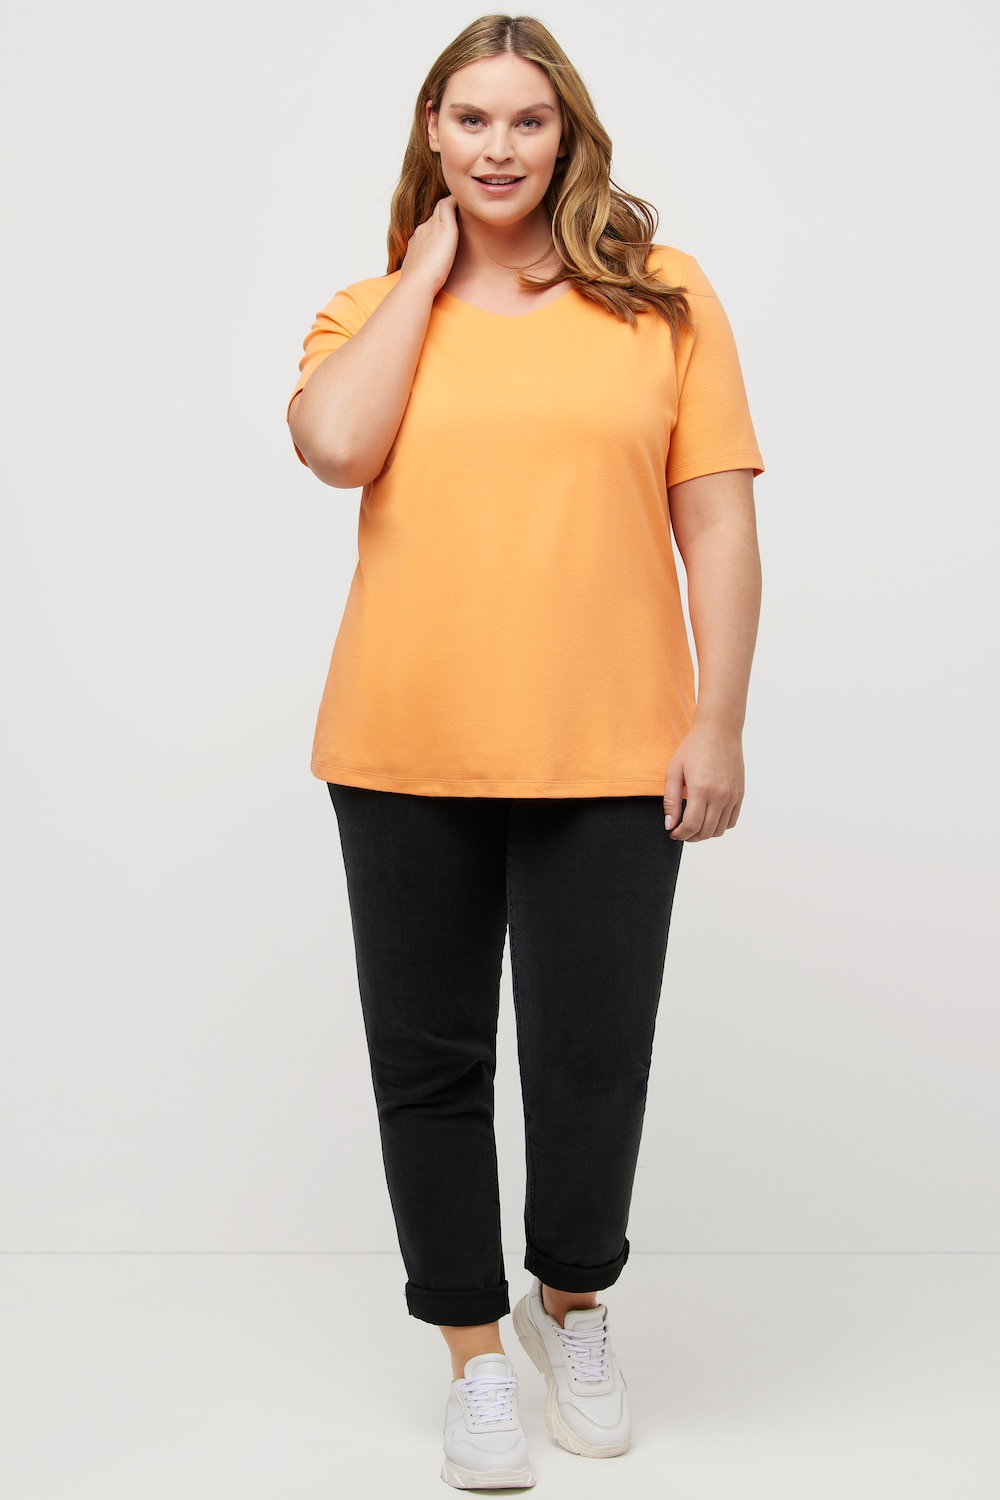 Große Größen Shirt, Damen, orange, Größe: 46/48, Baumwolle, Ulla Popken